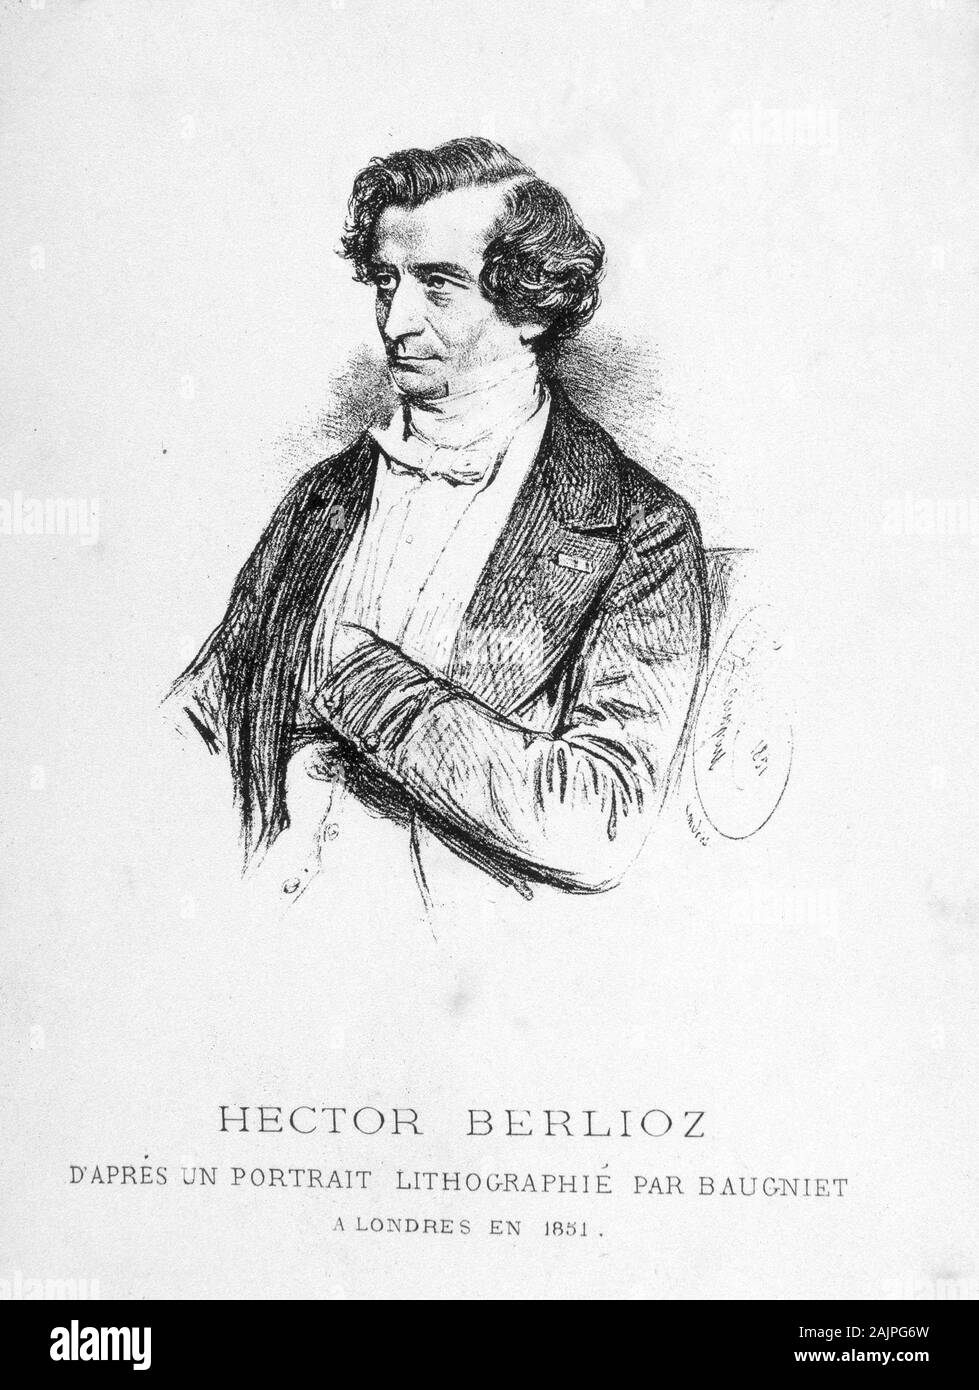 Portrait de Hector Berlioz (1803 - 1869) - d'apres un portrait lithographie par Baugniet a Londres en 1851. Stock Photo